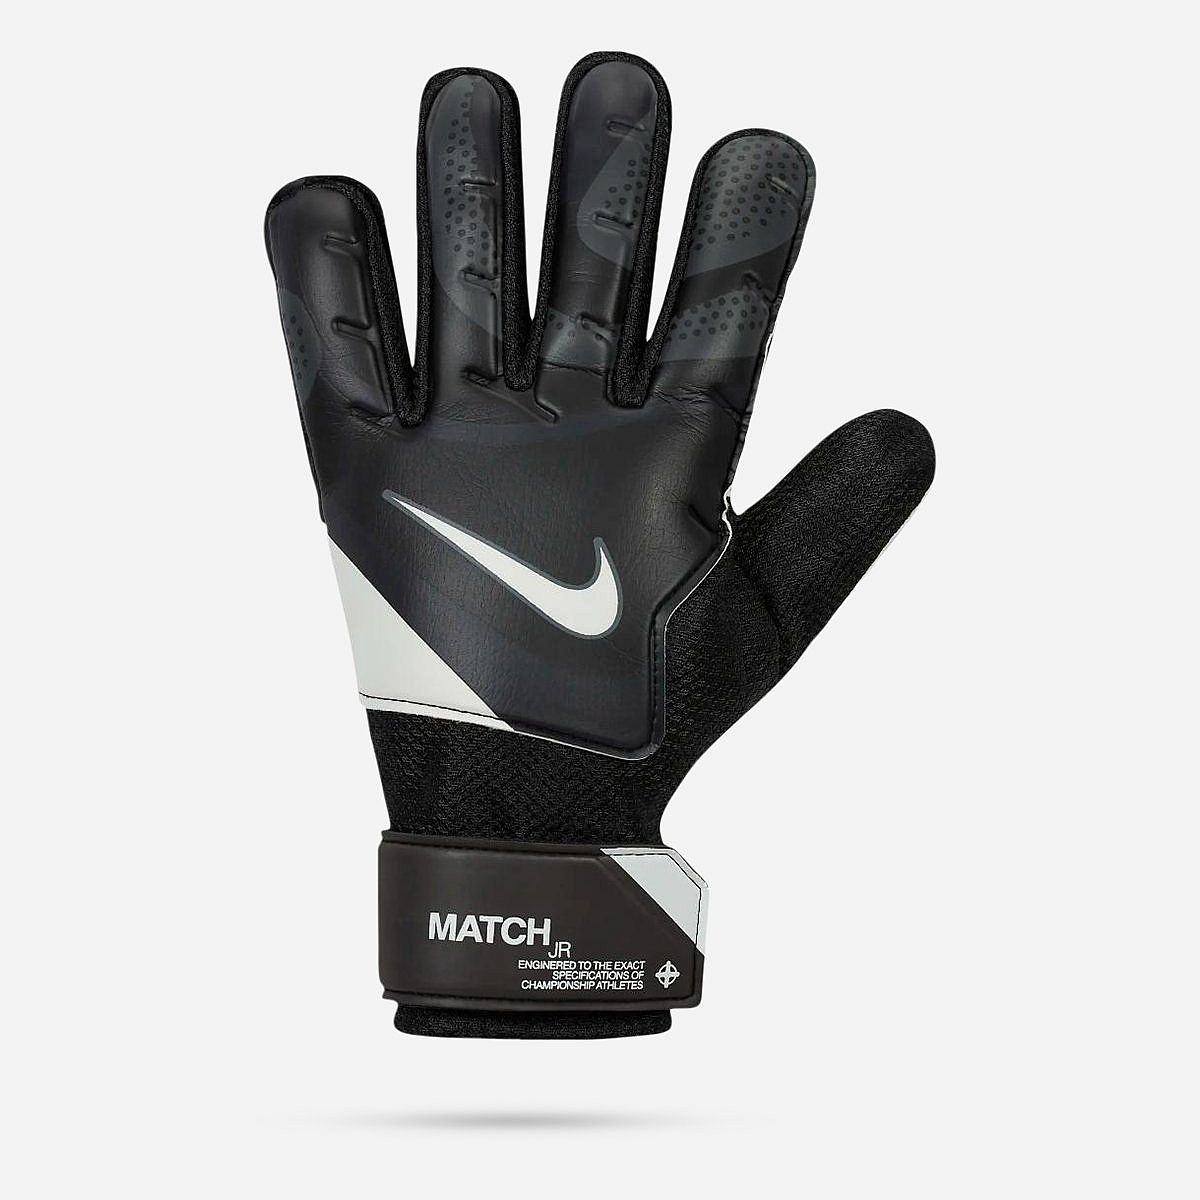 AN309651 Match Jr. Goal Keeper Gloves